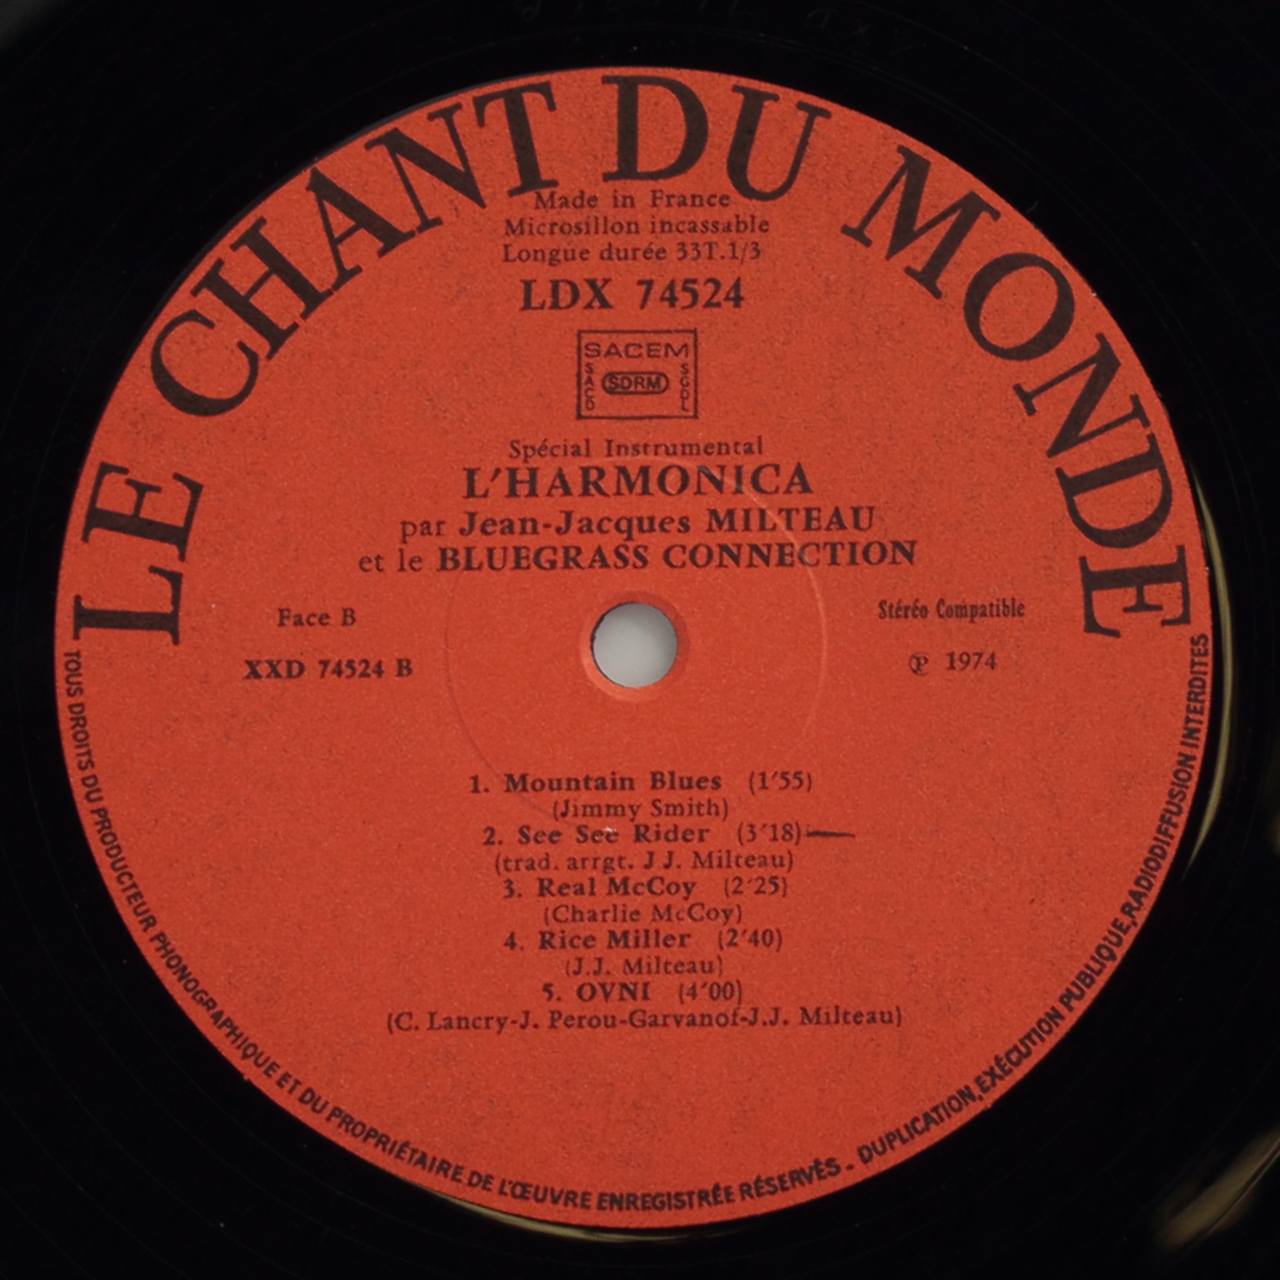 Lharmonica